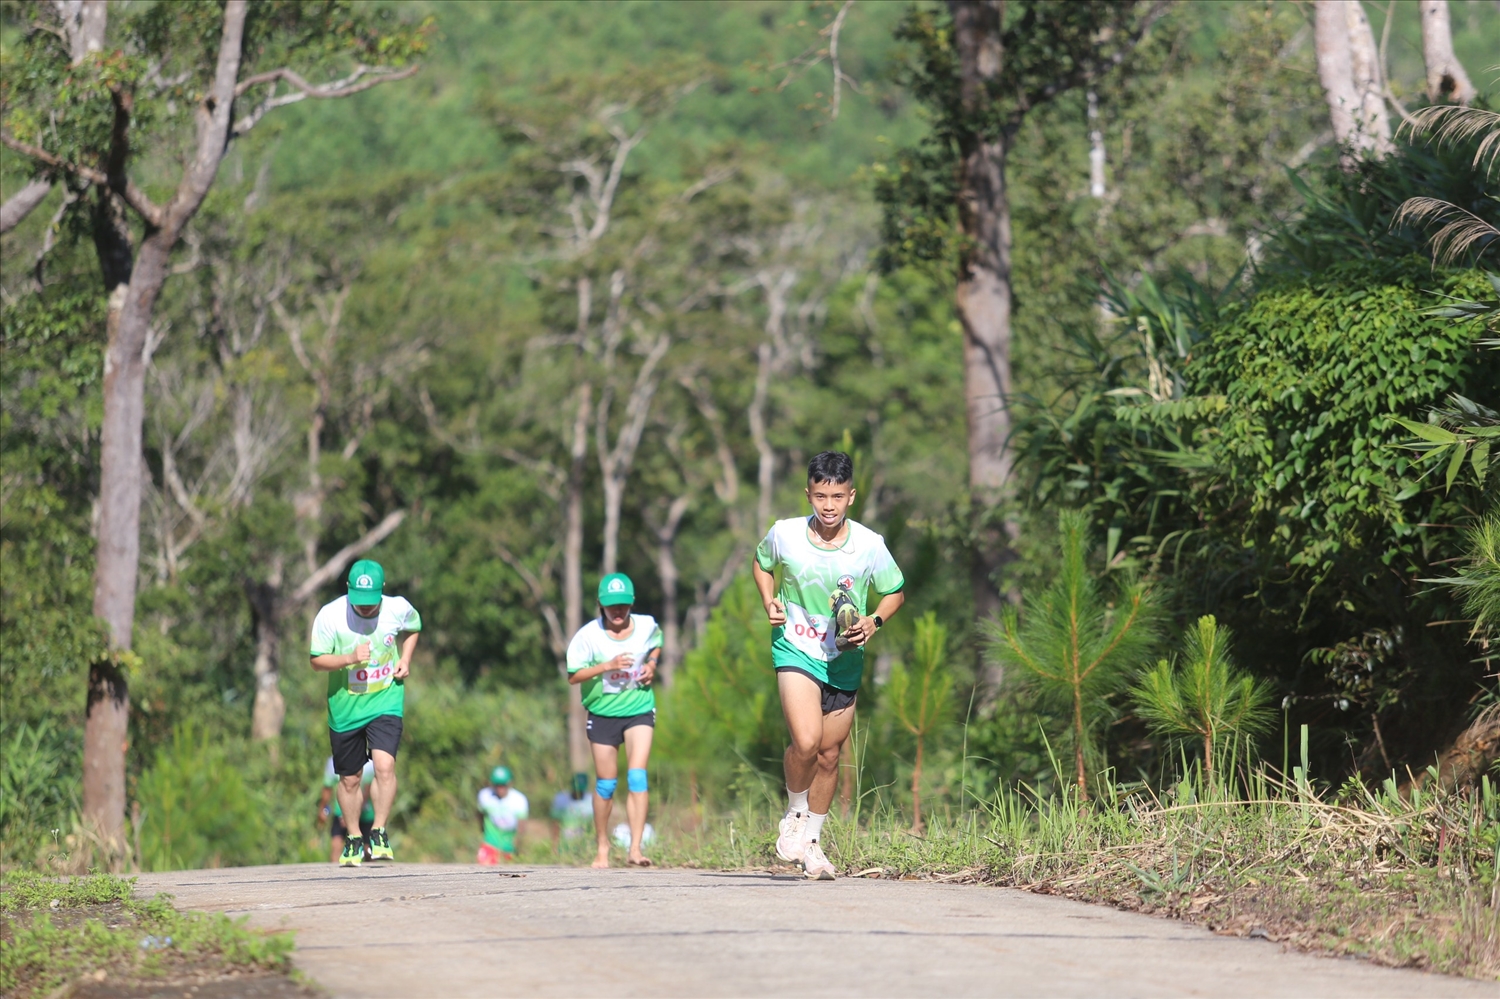  Các vận động viên chạy xuyên qua cánh rừng già, nỗ lực chinh phục đỉnh Pờ Yầu